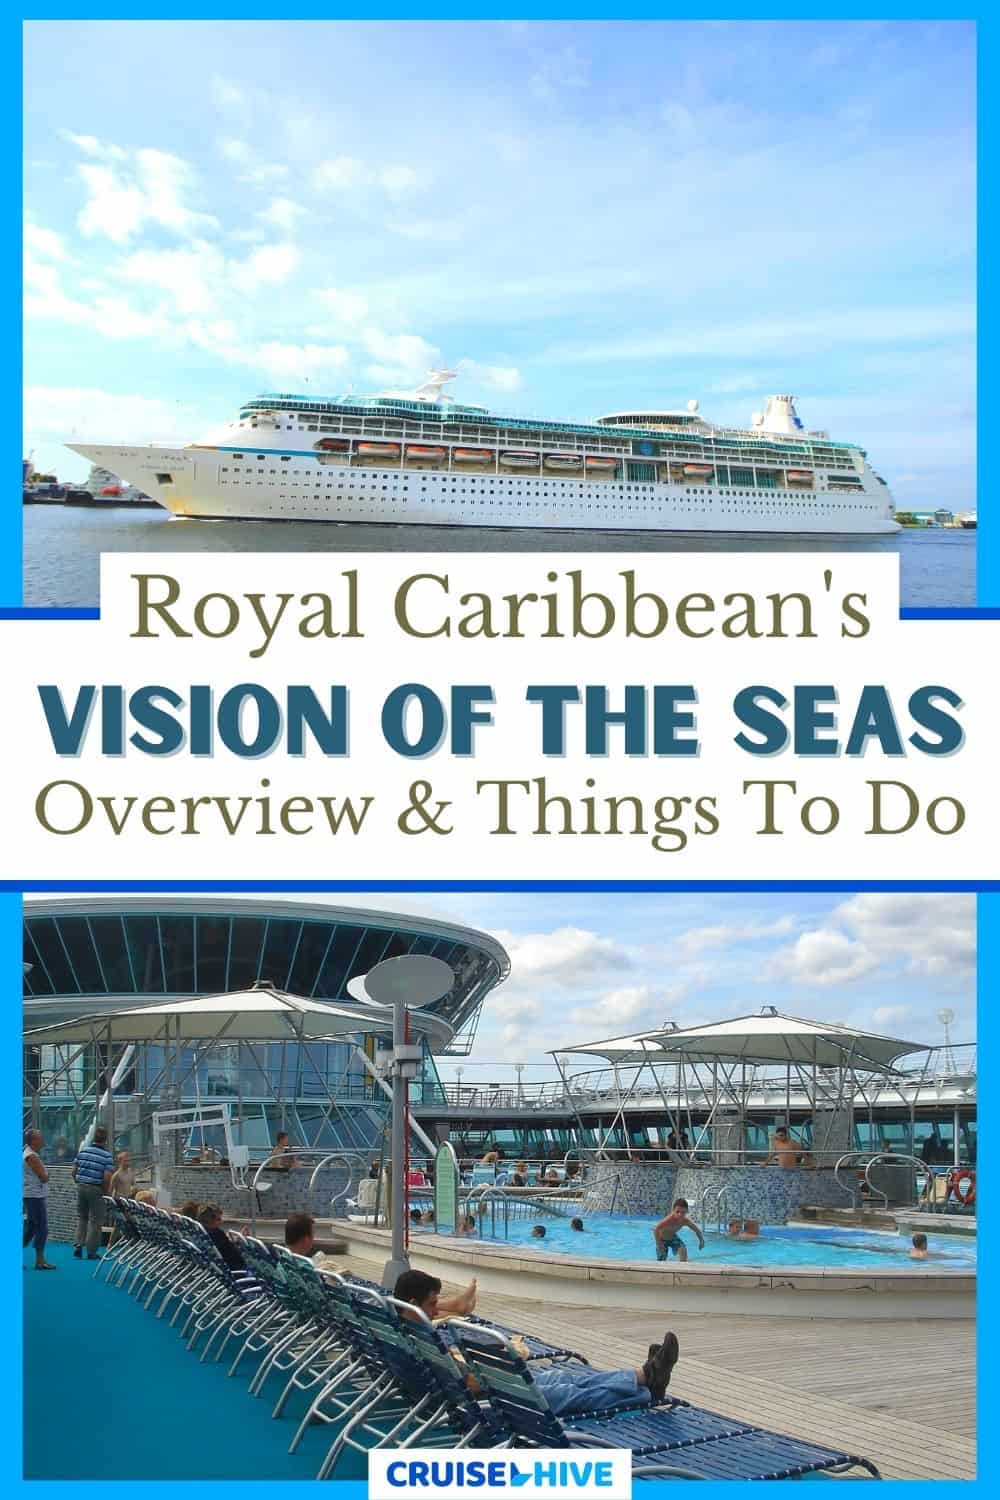 Royal Caribbean's Vision of the Seas